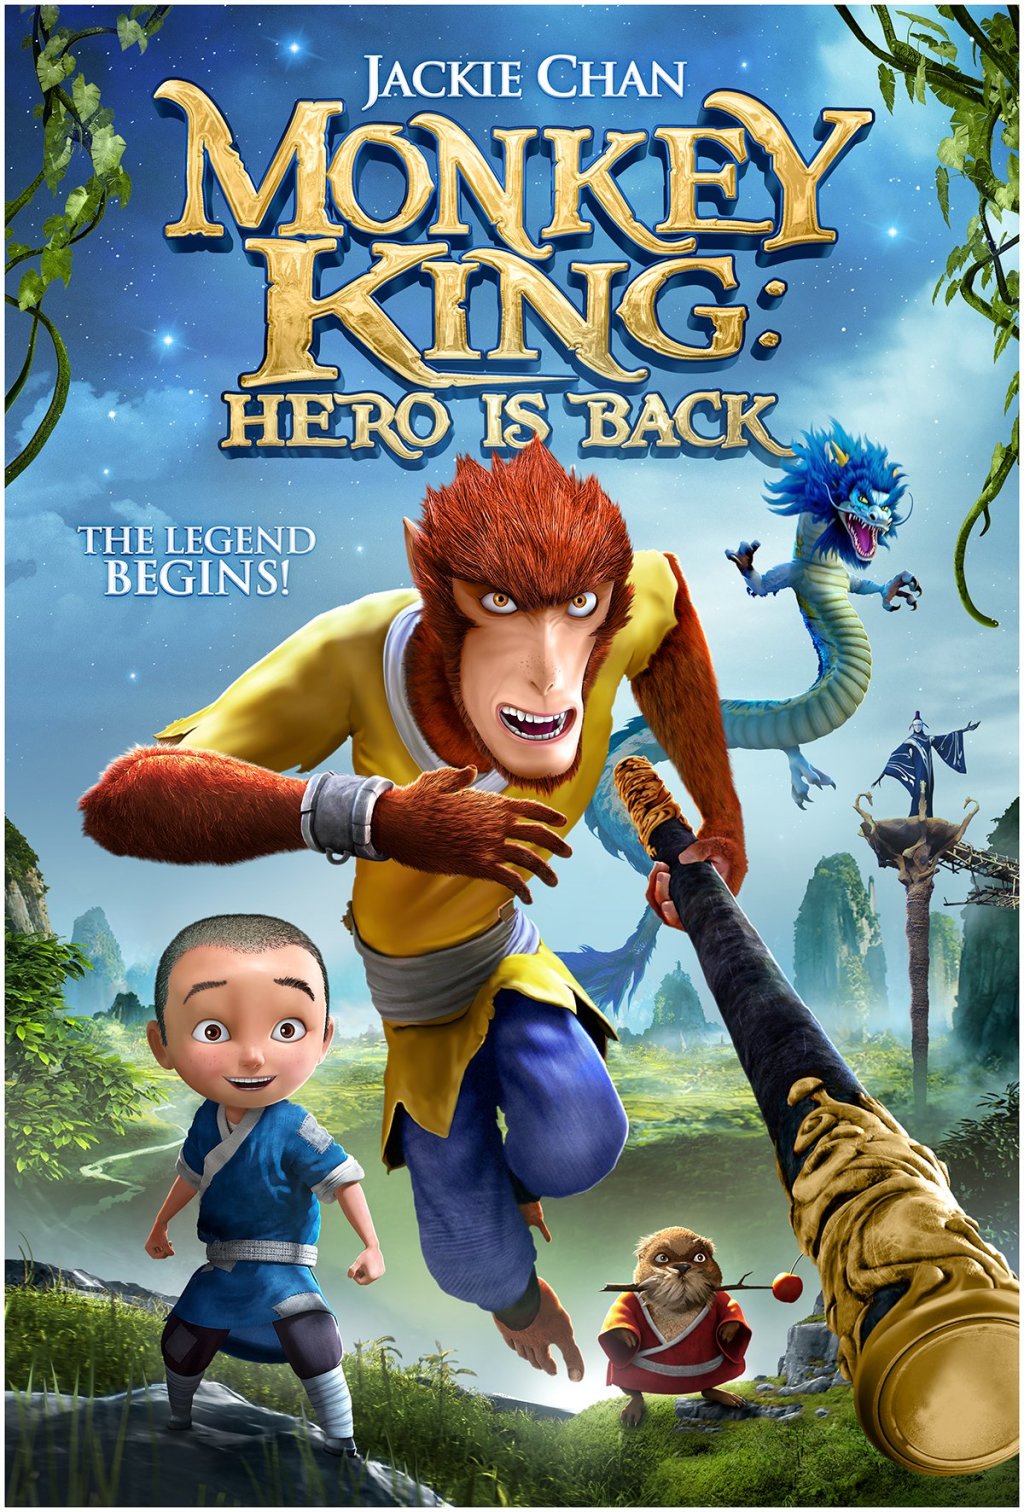 Watch Monkey King Hero Is Back on Netflix Today!